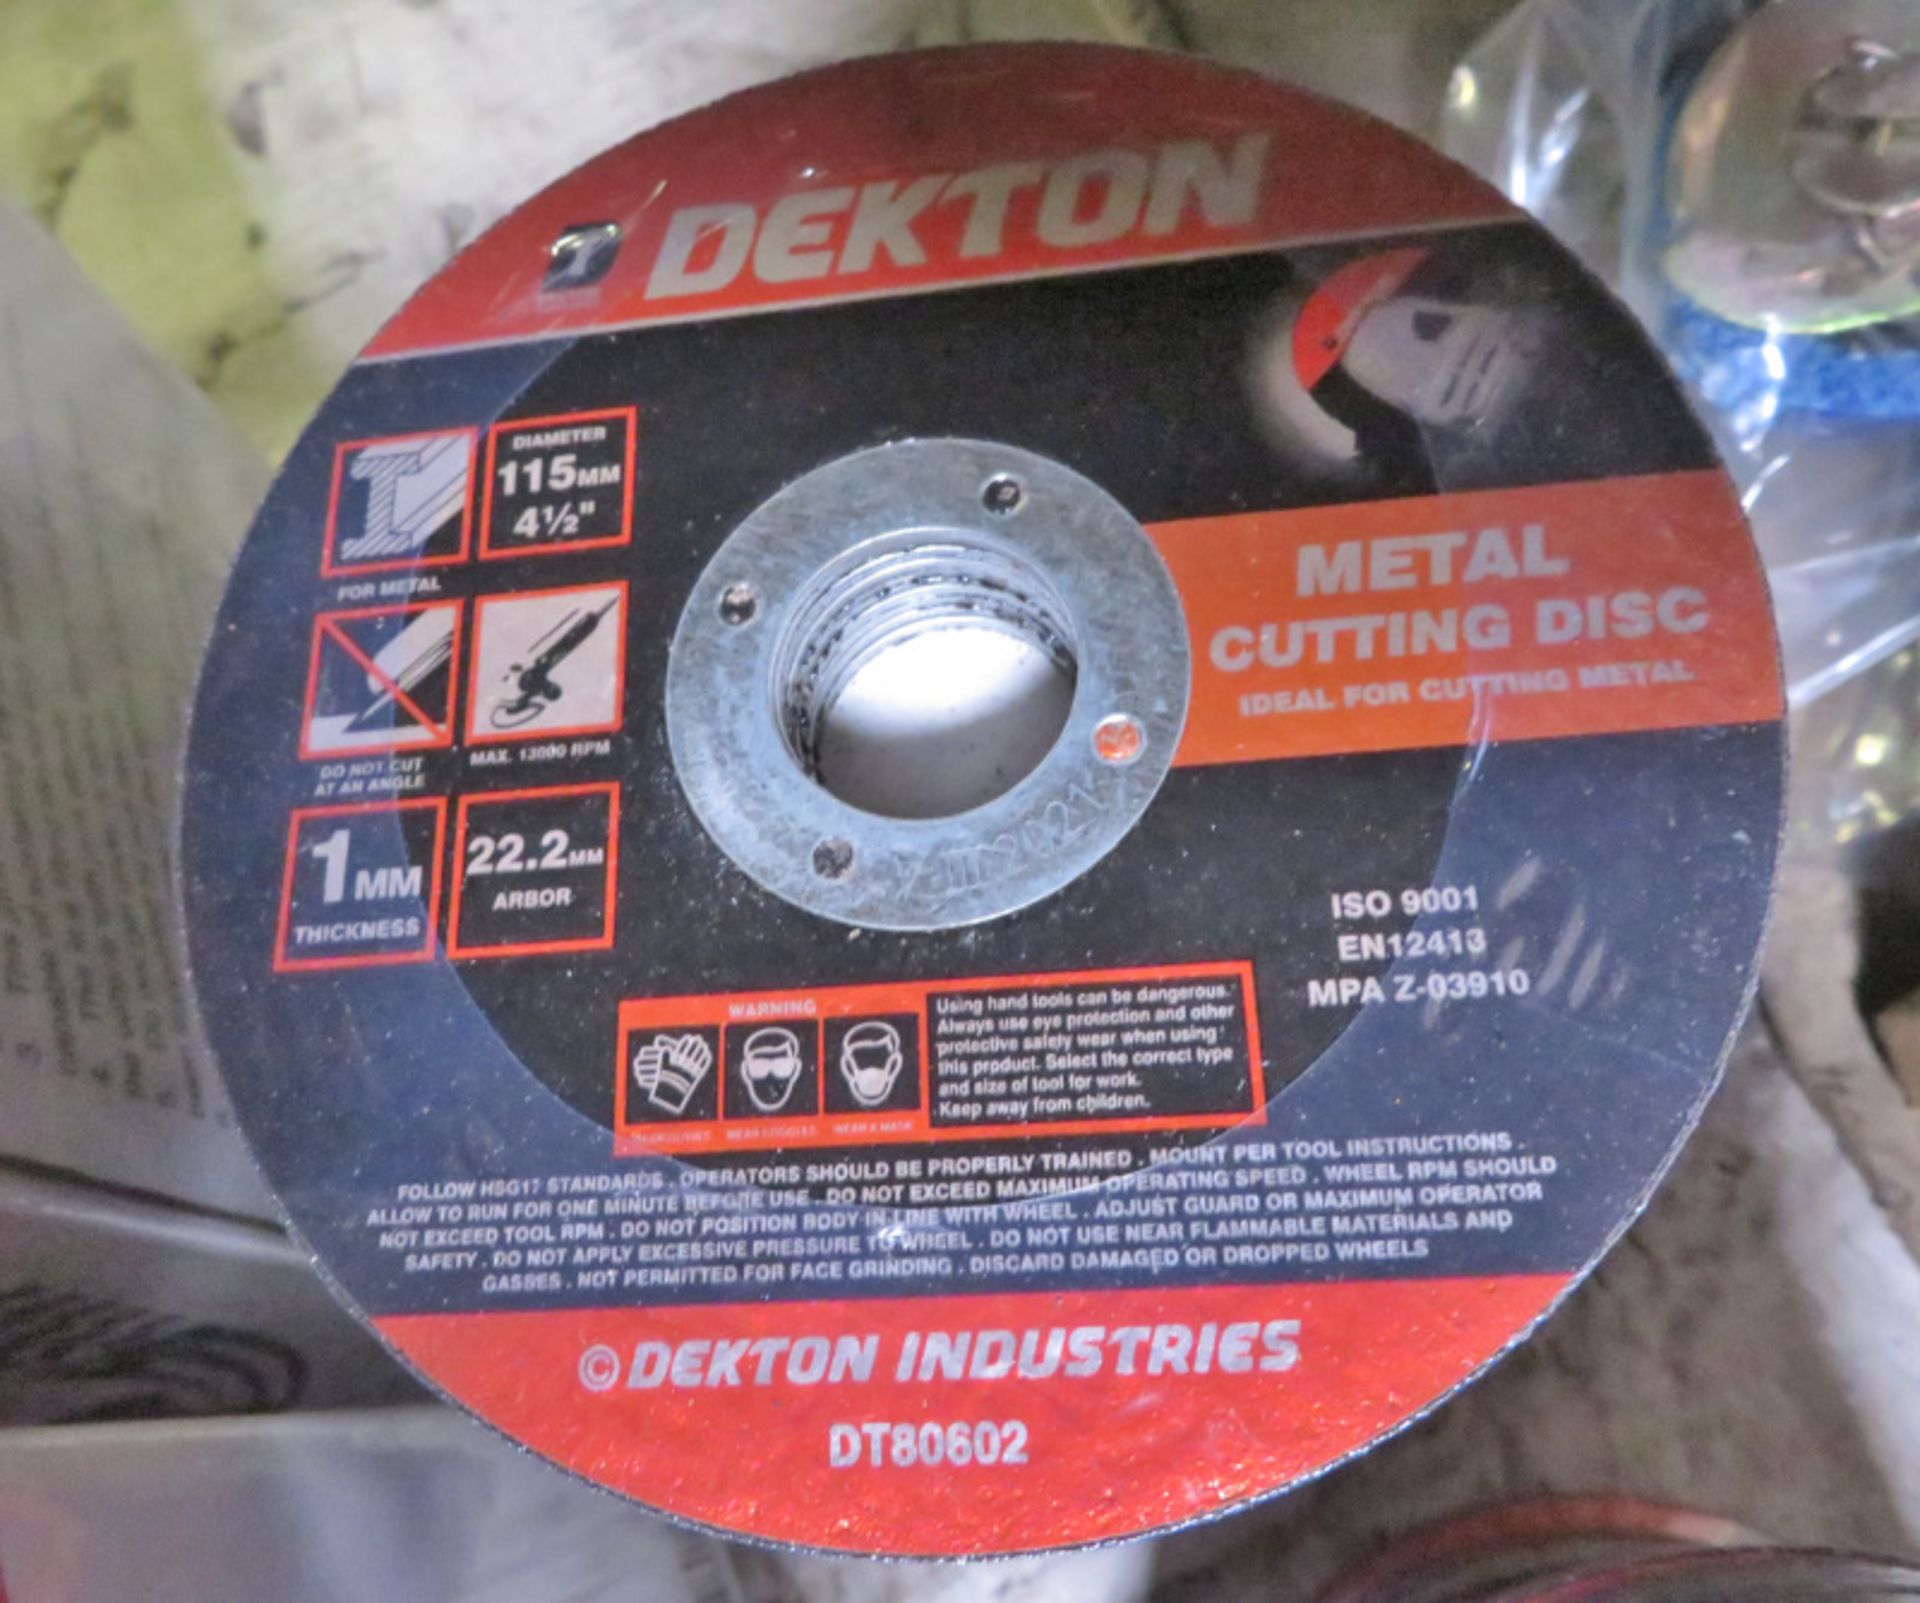 Dekton Metal cutting discs - 115mm diameter - 10 packs - 10 discs per pack - Image 2 of 2